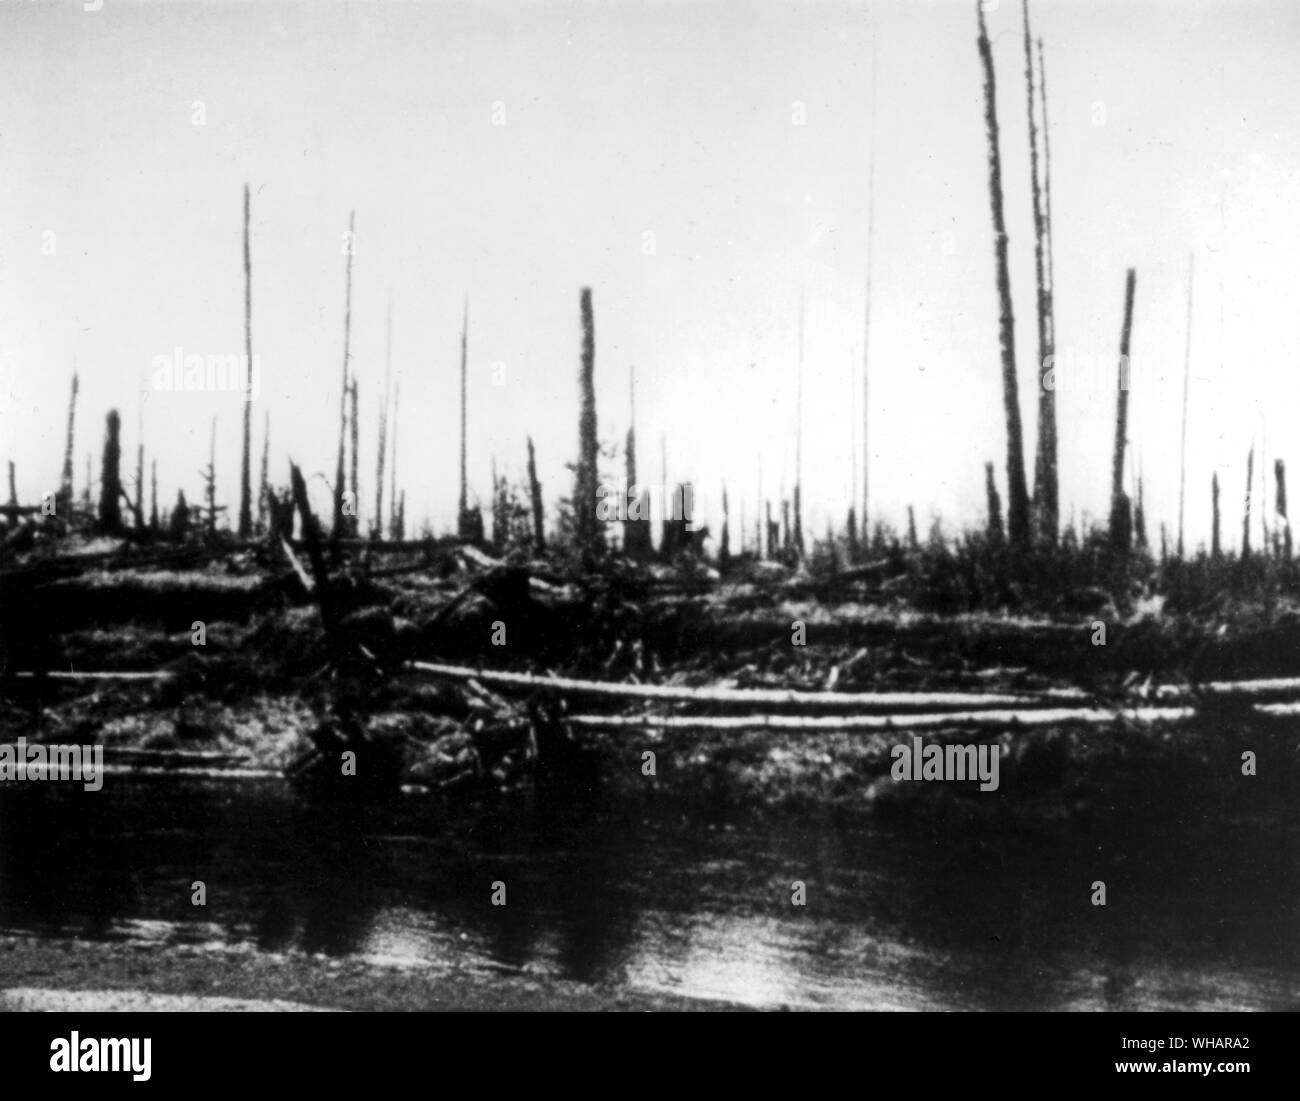 Tunguska Explosion nach dem Jahr 1908. Am 30. Juni 1908 etwas explodiert 8 km über die Steinige Tunguska River. Über 2150 Quadratkilometer der sibirischen Taiga wurden verwüstet und 80 Millionen Bäume wurden gestürzt. Bis heute ist nicht klar, ob die grosse Explosion aufgrund eines Kometen oder Asteroiden oder etwas anderes war. Stockfoto